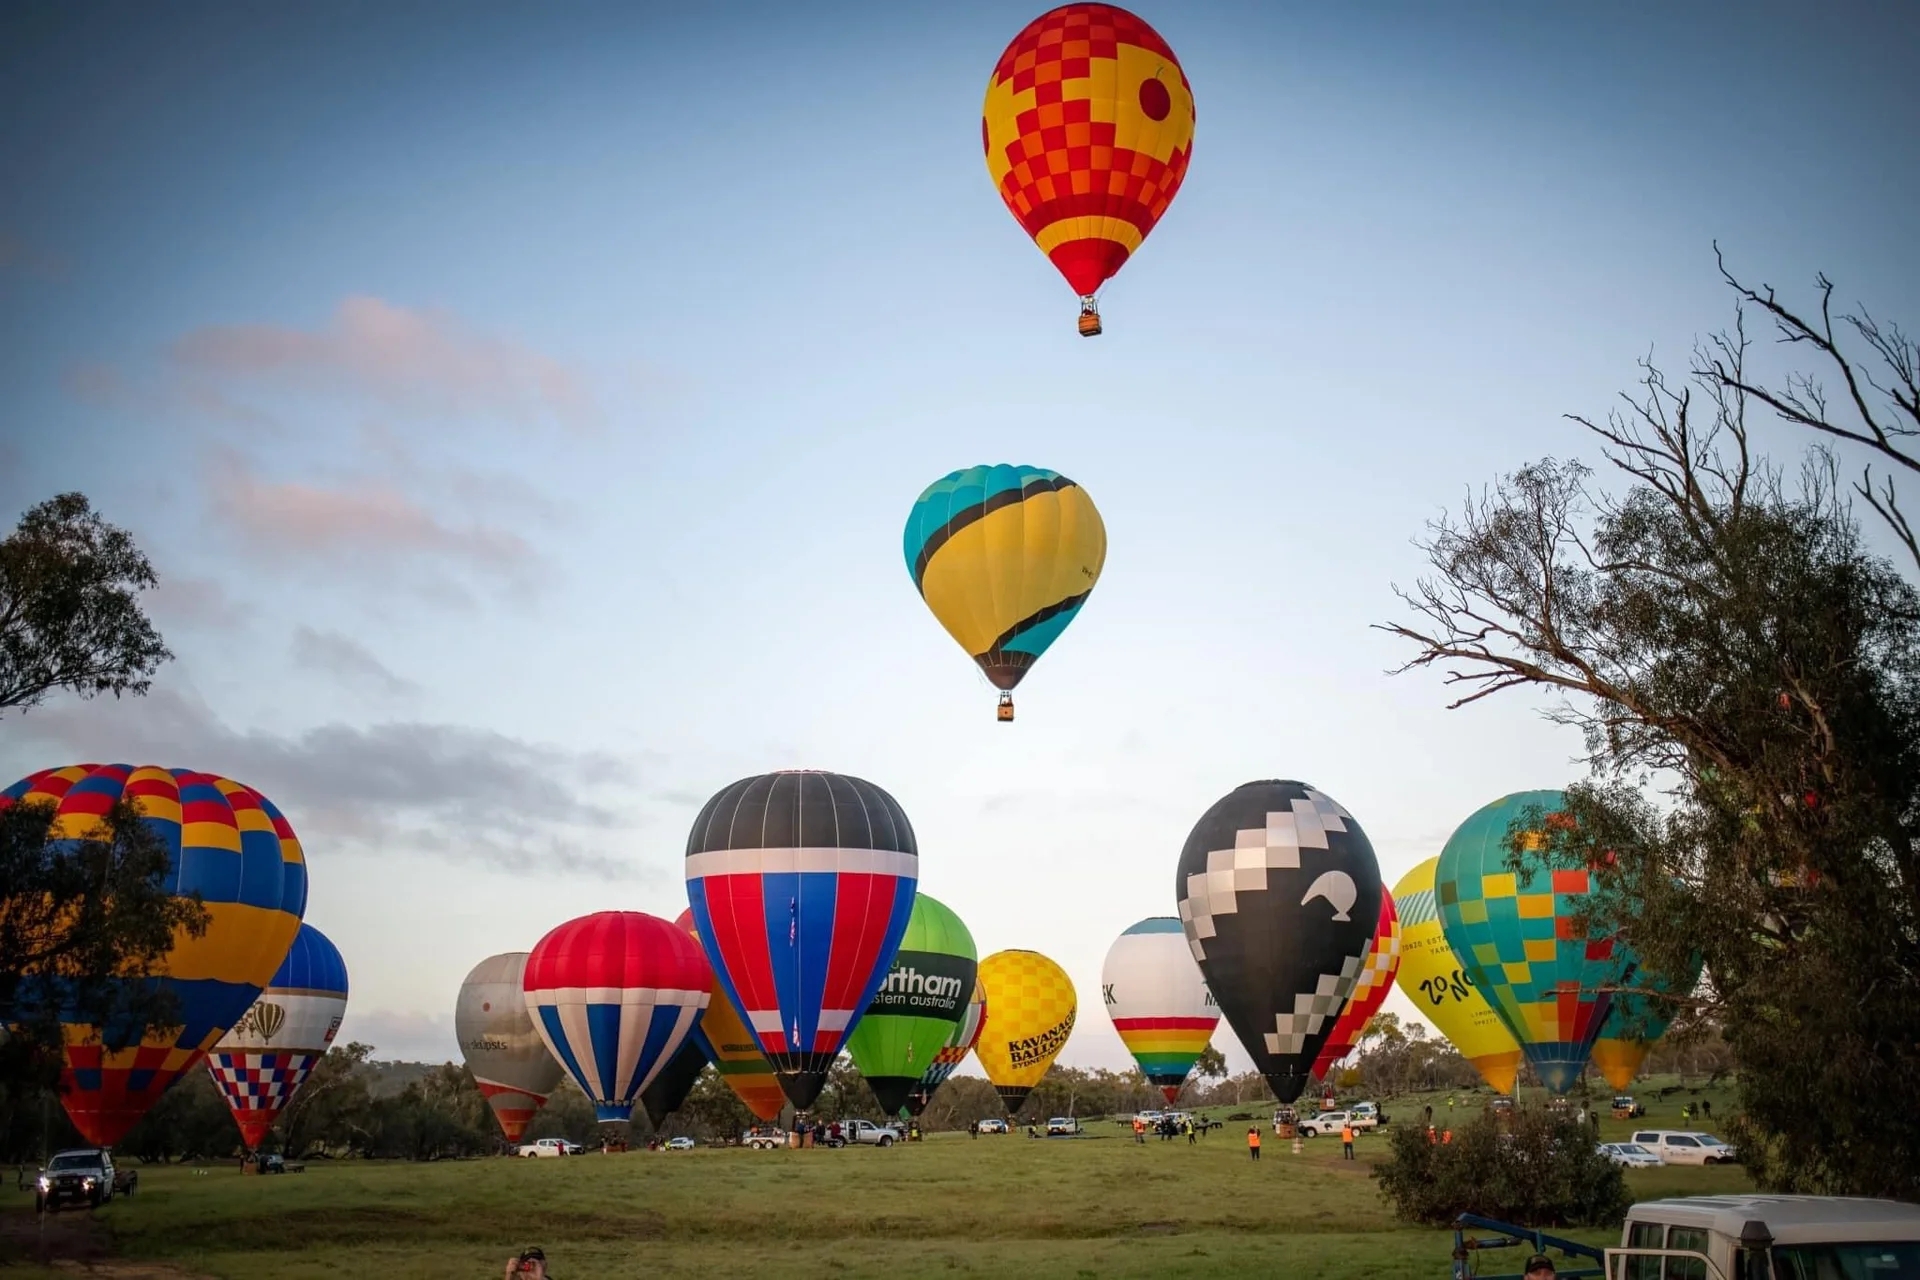 #珀斯热气球飞行体验  在西澳也能看见媲美土耳其的热气球啦 还好没有错过。 本周的西澳热气球节(女子